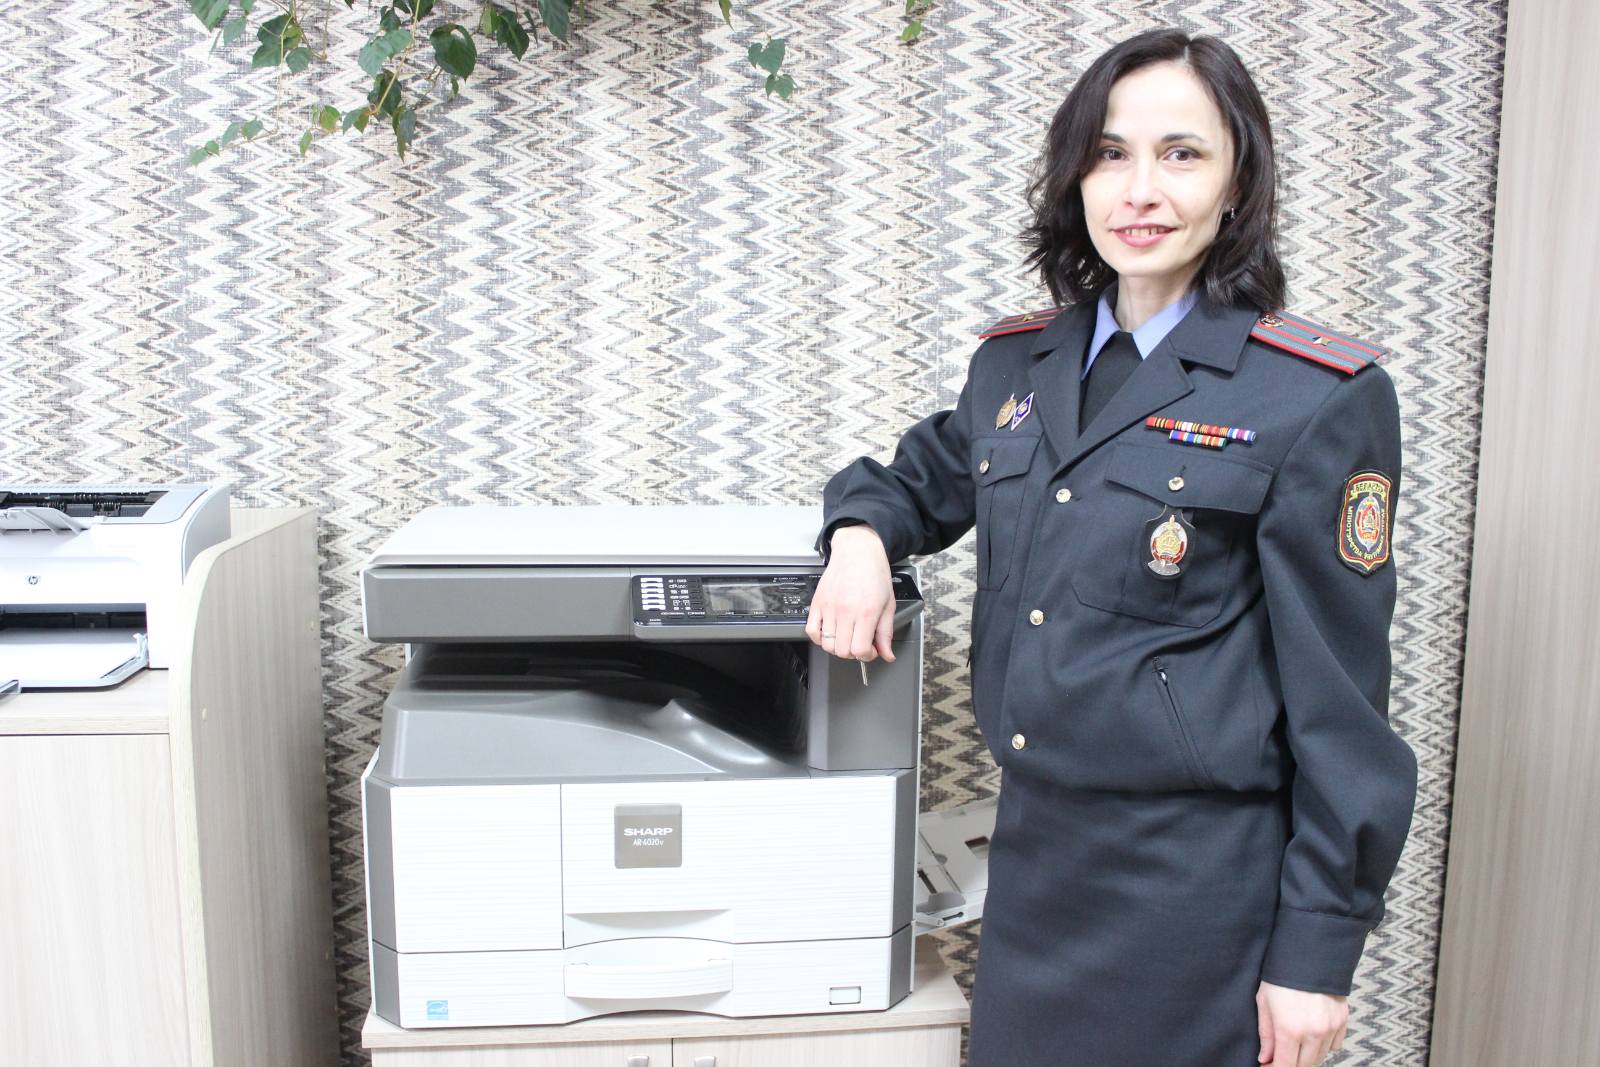 Майор милиции Сморгонского РОВД Сусанна Горяйнова рассказывает о себе и своей профессии (АУДИО) 